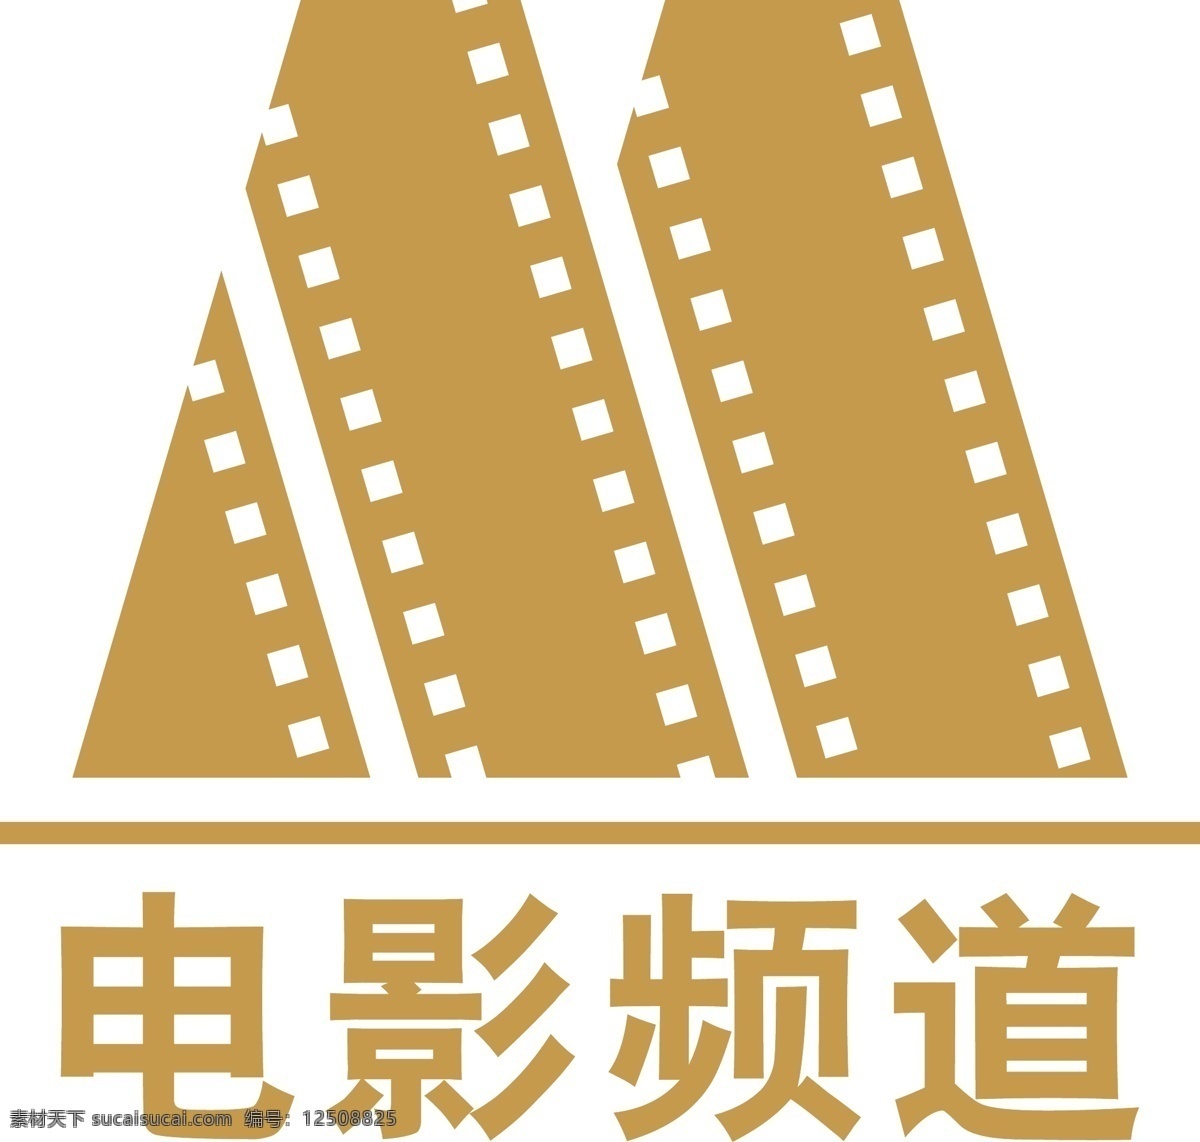 电影频道 logo 企业 标志 标识标志图标 矢量